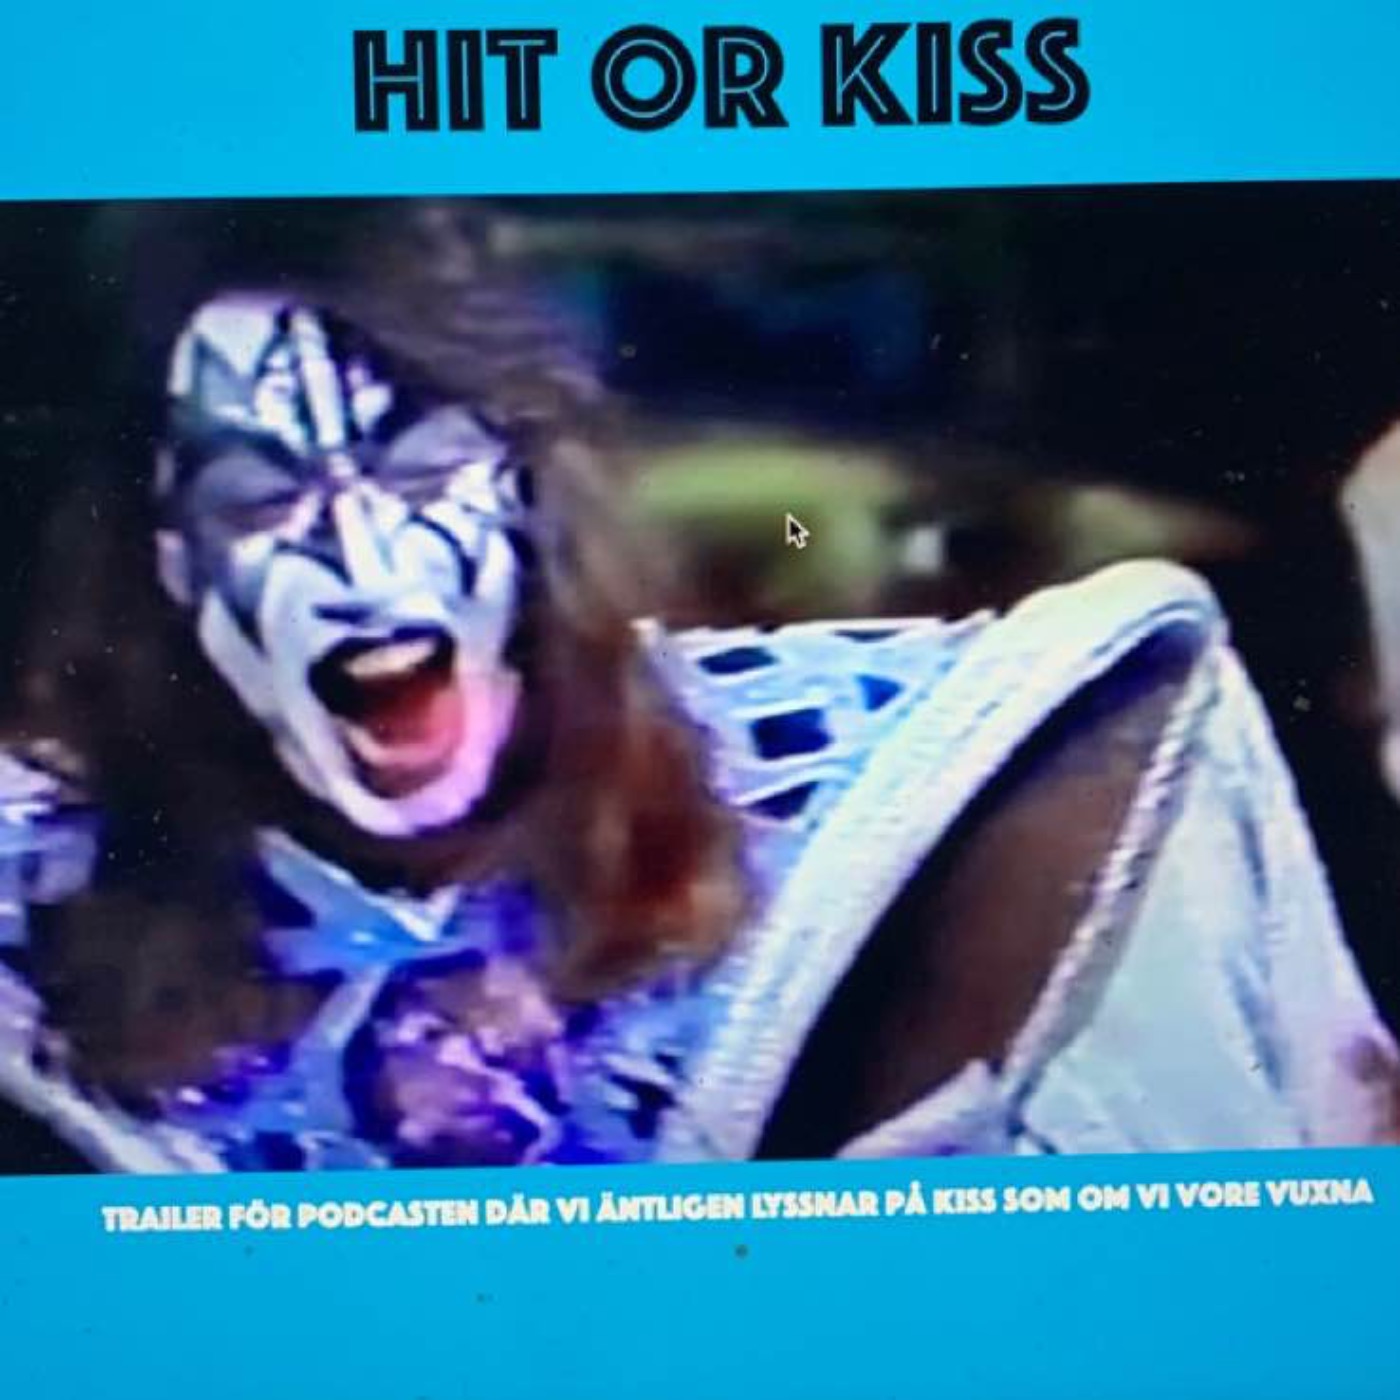 cover art for Trailer: Hit or Kiss - Snart lyssnar vi på Kiss som om vi var vuxna